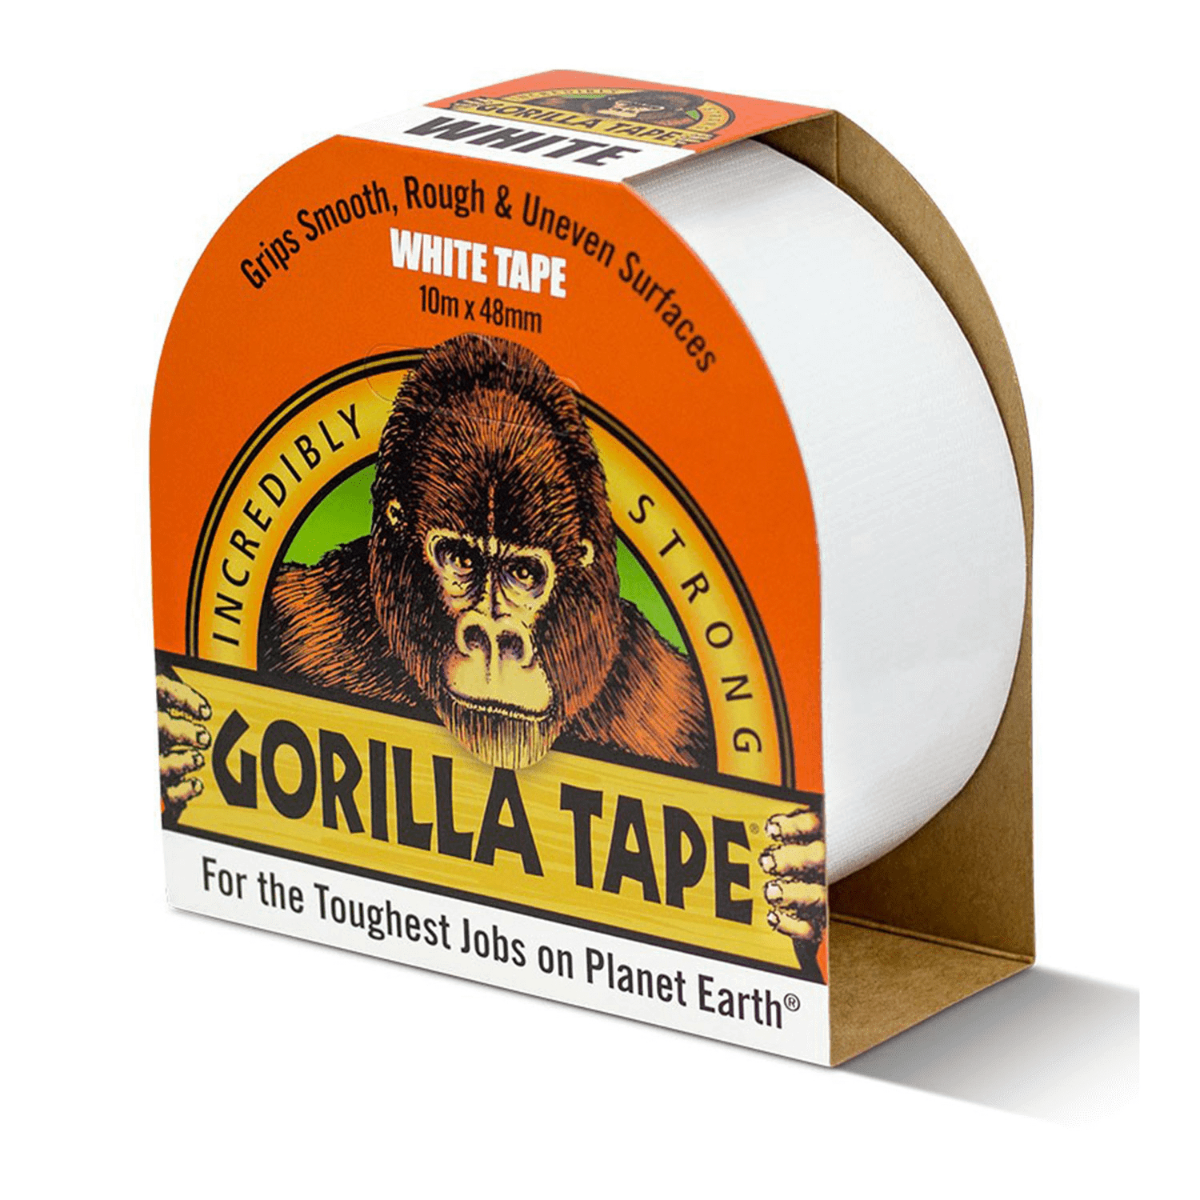 Gorilla Glue Tape White, 48mmx10m